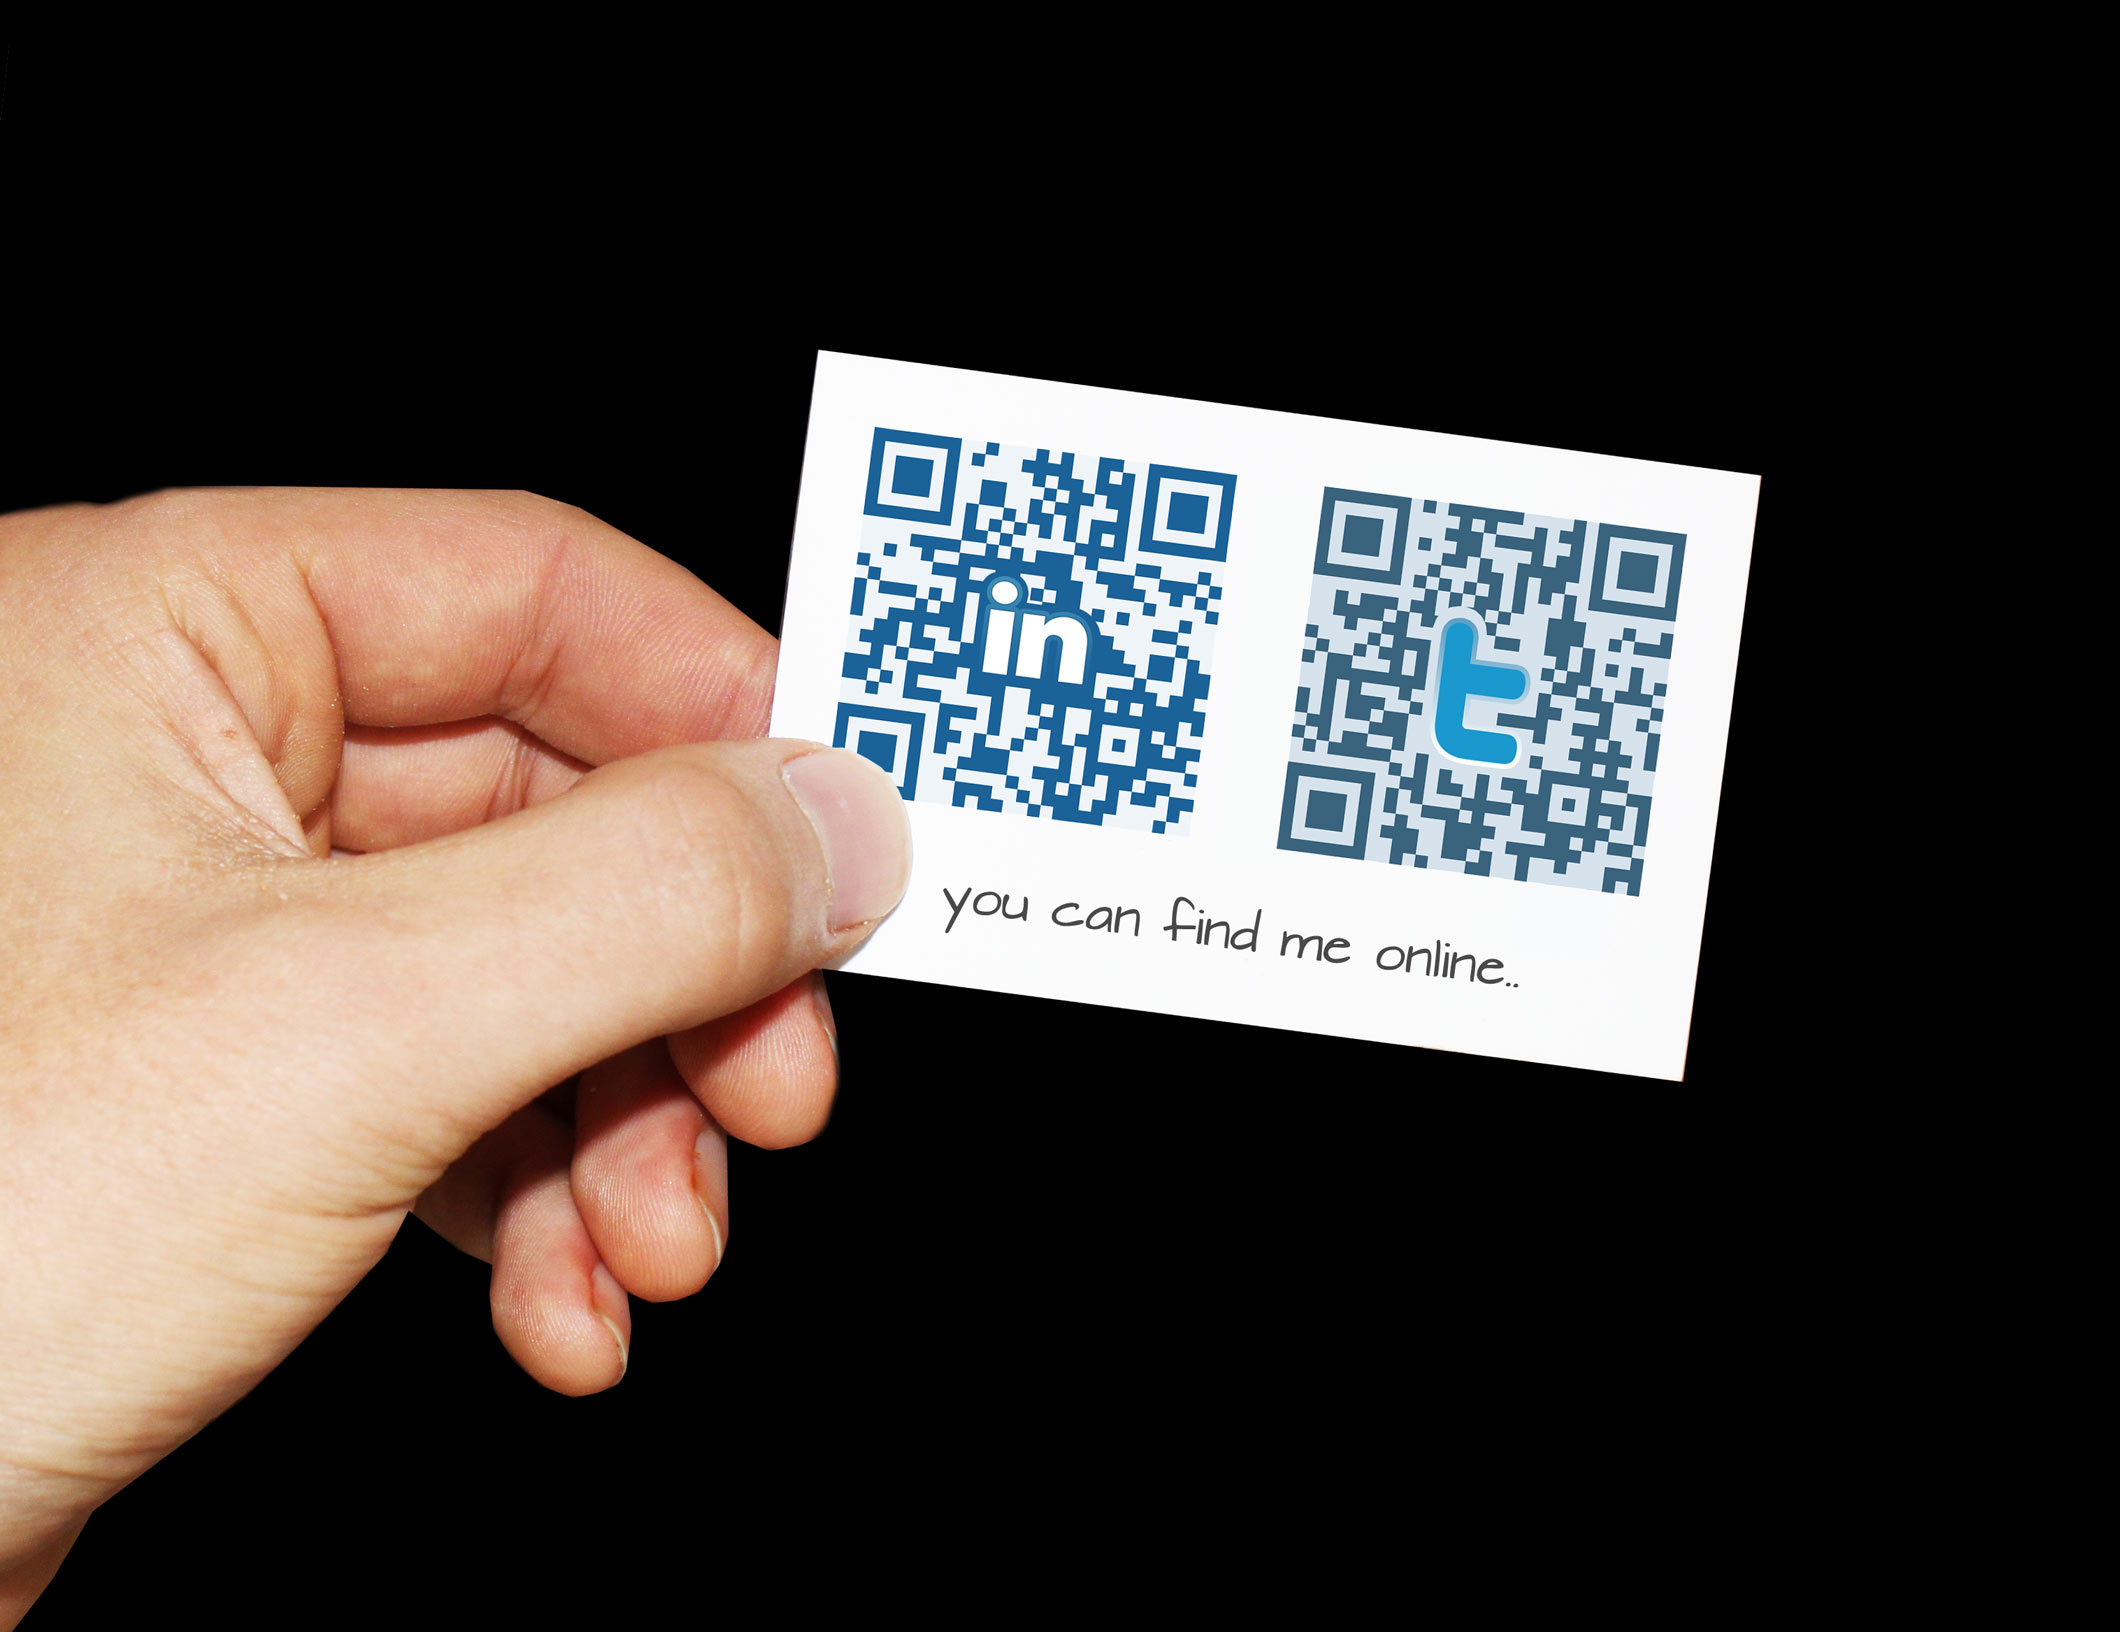 Mail qr код. Визитка с QR кодом. QR коды на визитке. Образец визитки с QR кодом. Необычная визитка QR код.